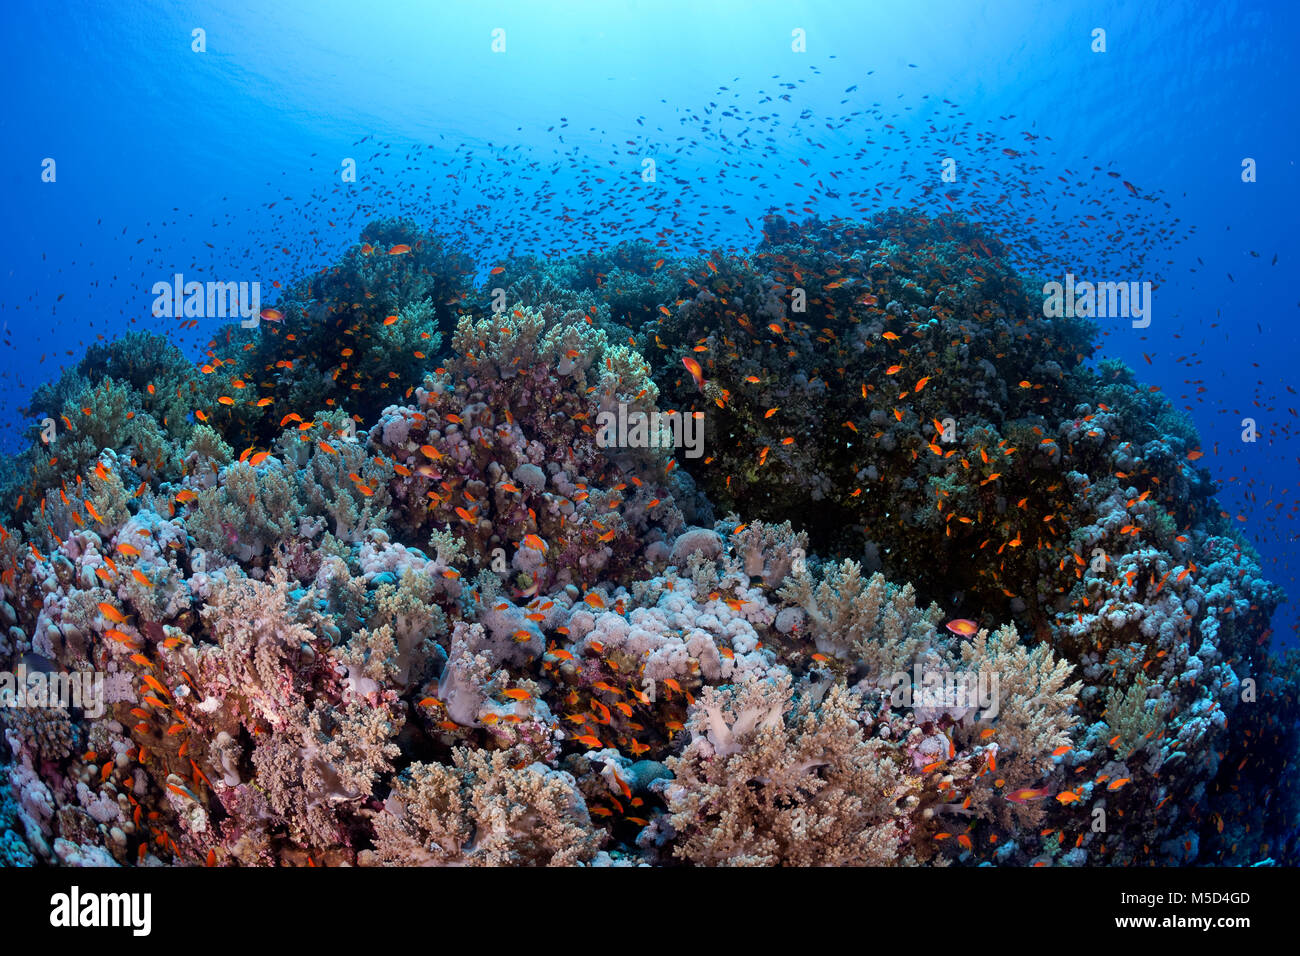 Les récifs coralliens typiques, végétation dense avec divers coraux, Shoal avec Anthias (Anthiinae), Red Sea, Egypt Banque D'Images